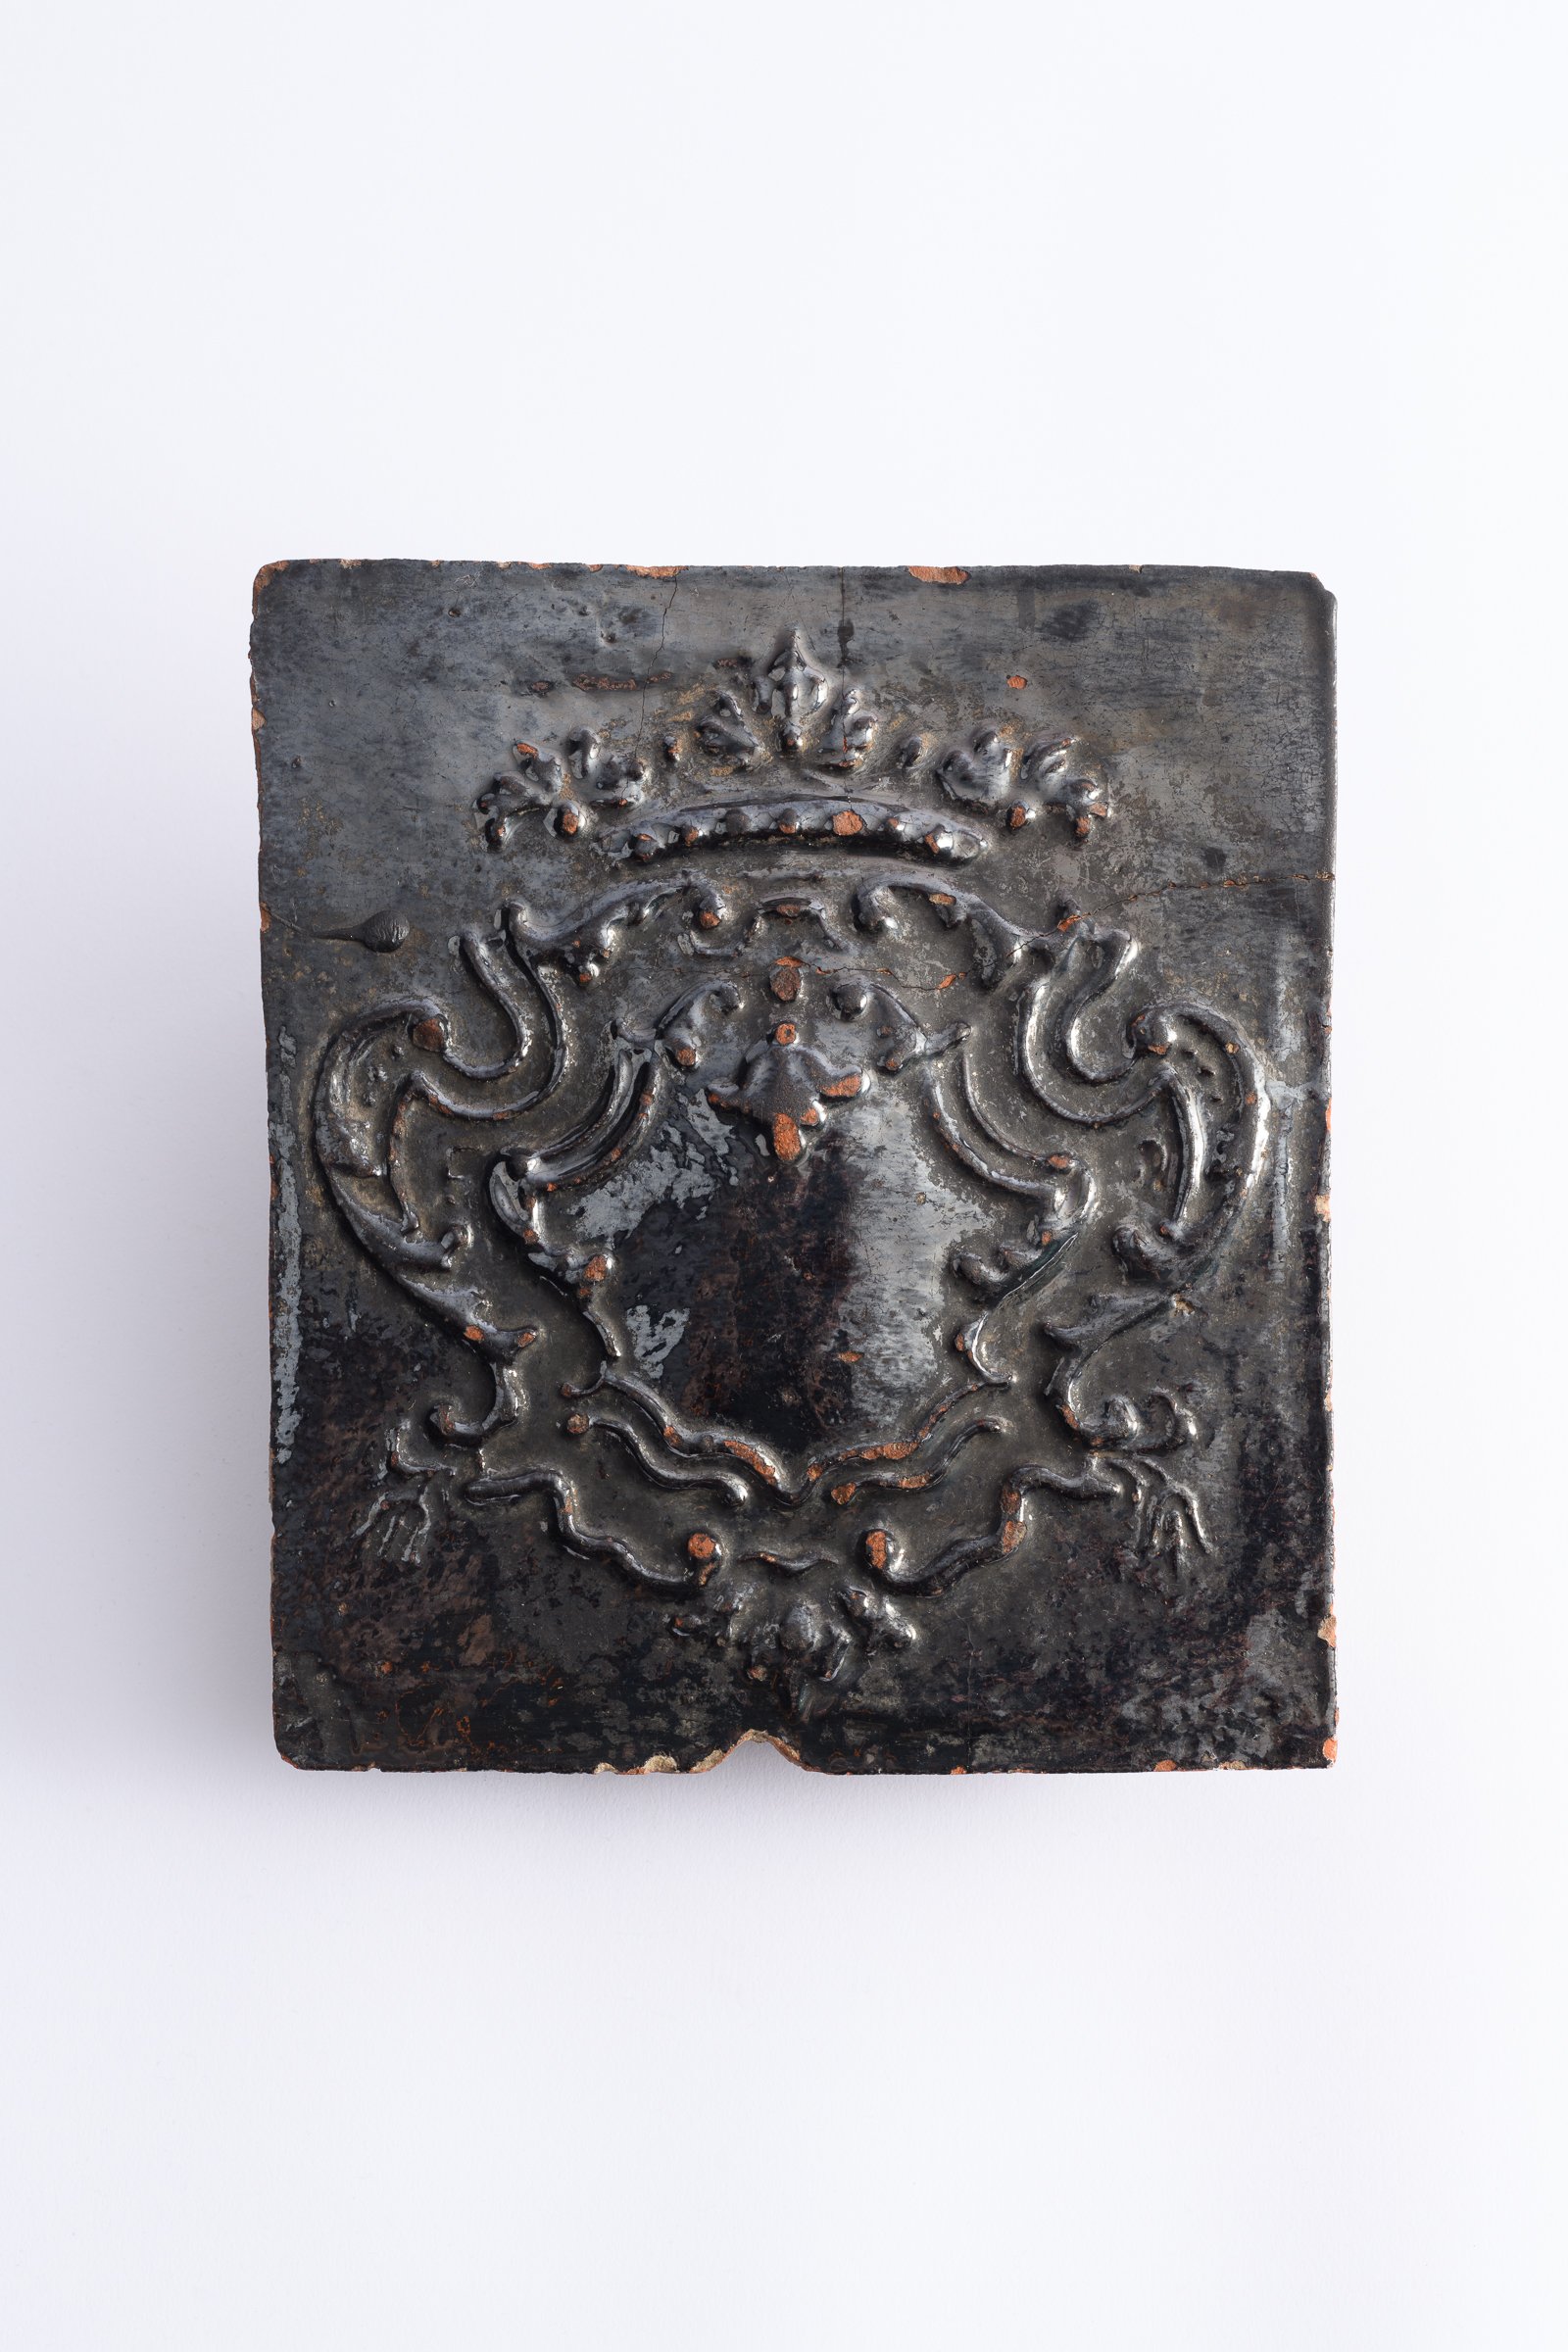 Ofenkachel schwarz mit Wappensymbol (Binnenschifffahrts-Museum Oderberg CC BY-NC-SA)